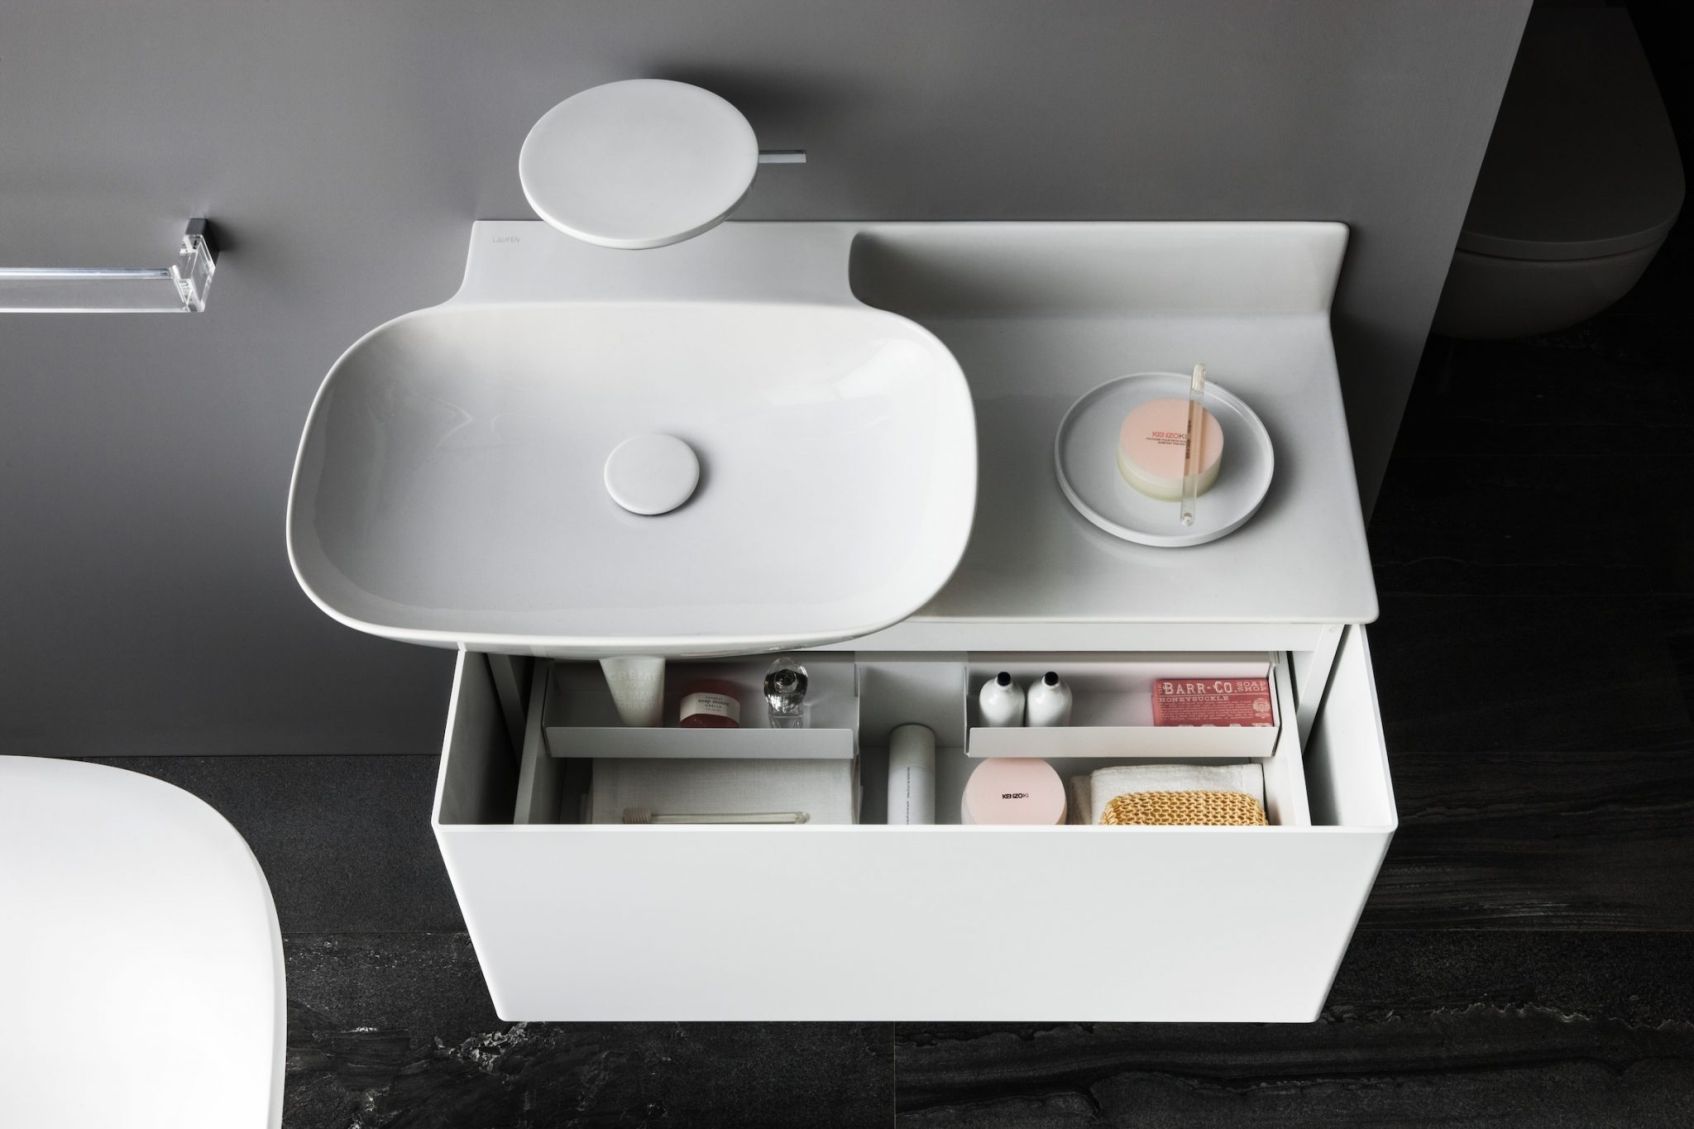 Laufen Ino – ceramika łazienkowa idealna do minimalistycznych wnętrz